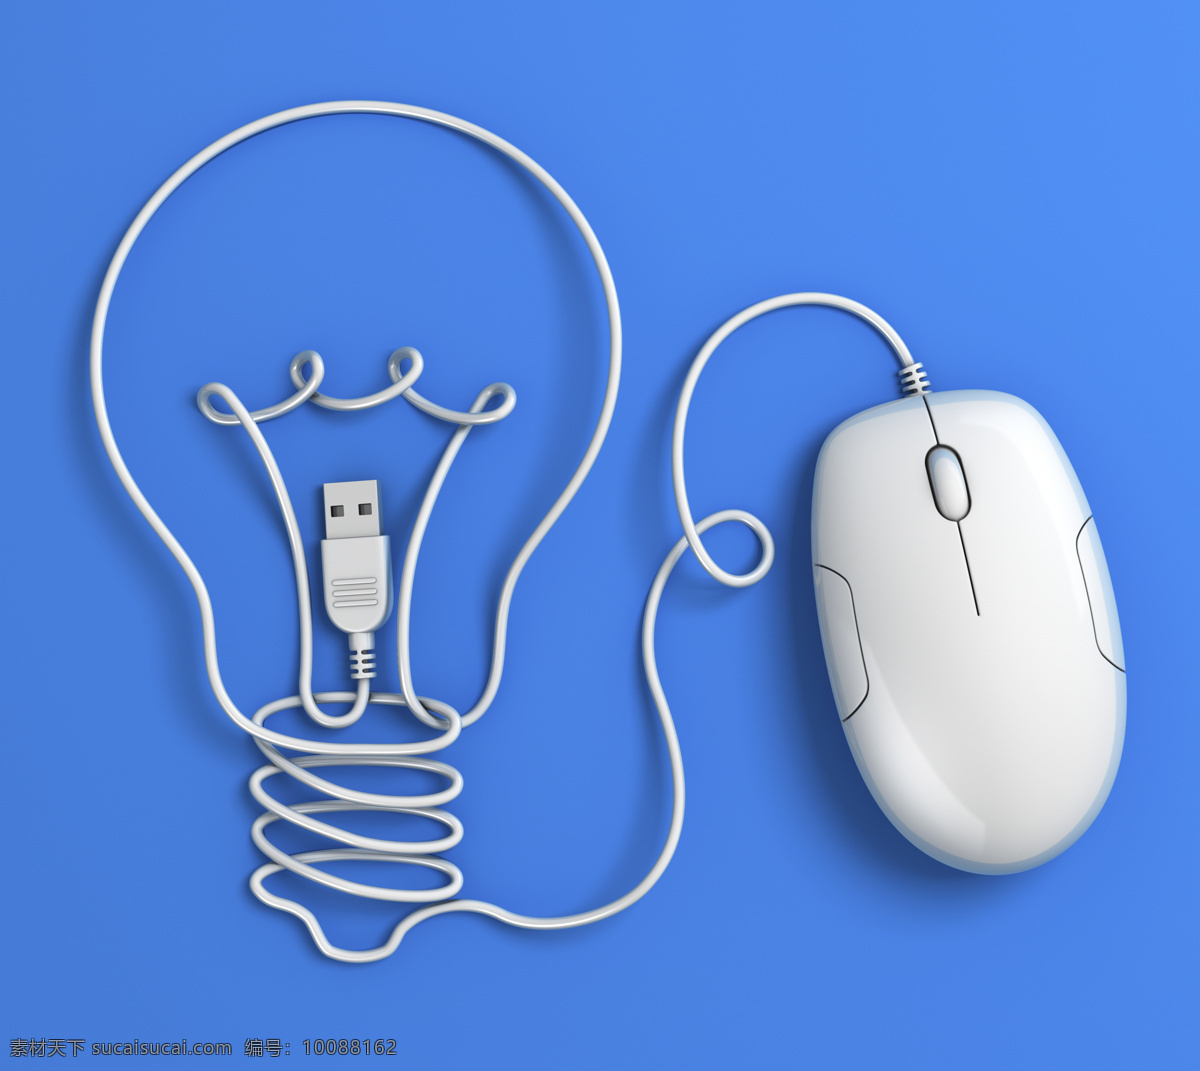 电灯泡 鼠标 节能环保 usb数据线 电脑数码 生活百科